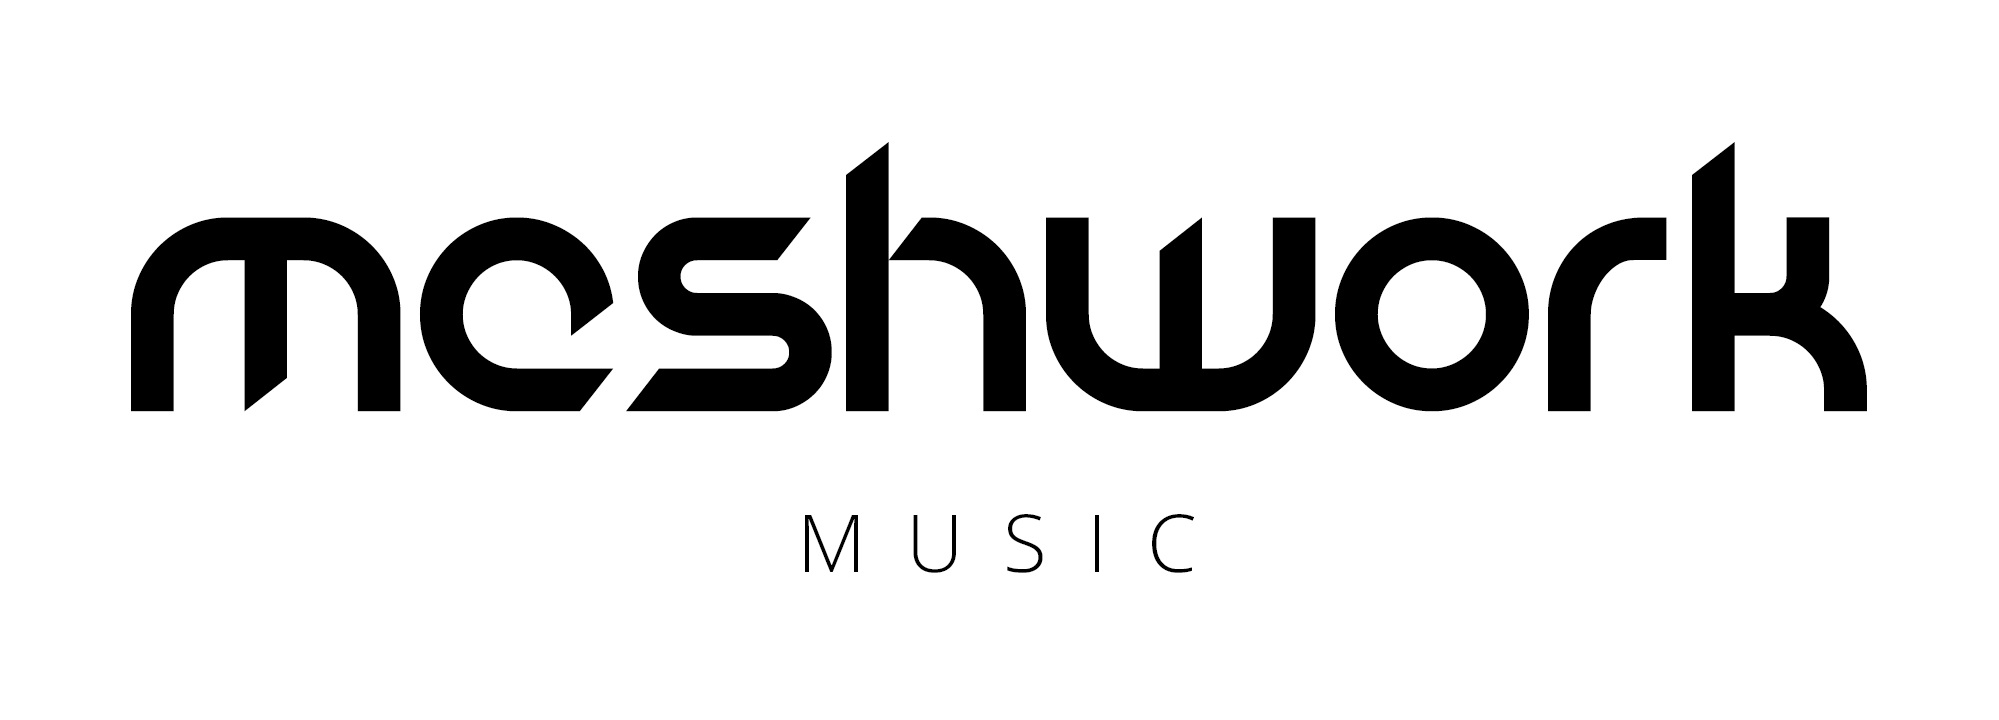 Meshwork Music logo